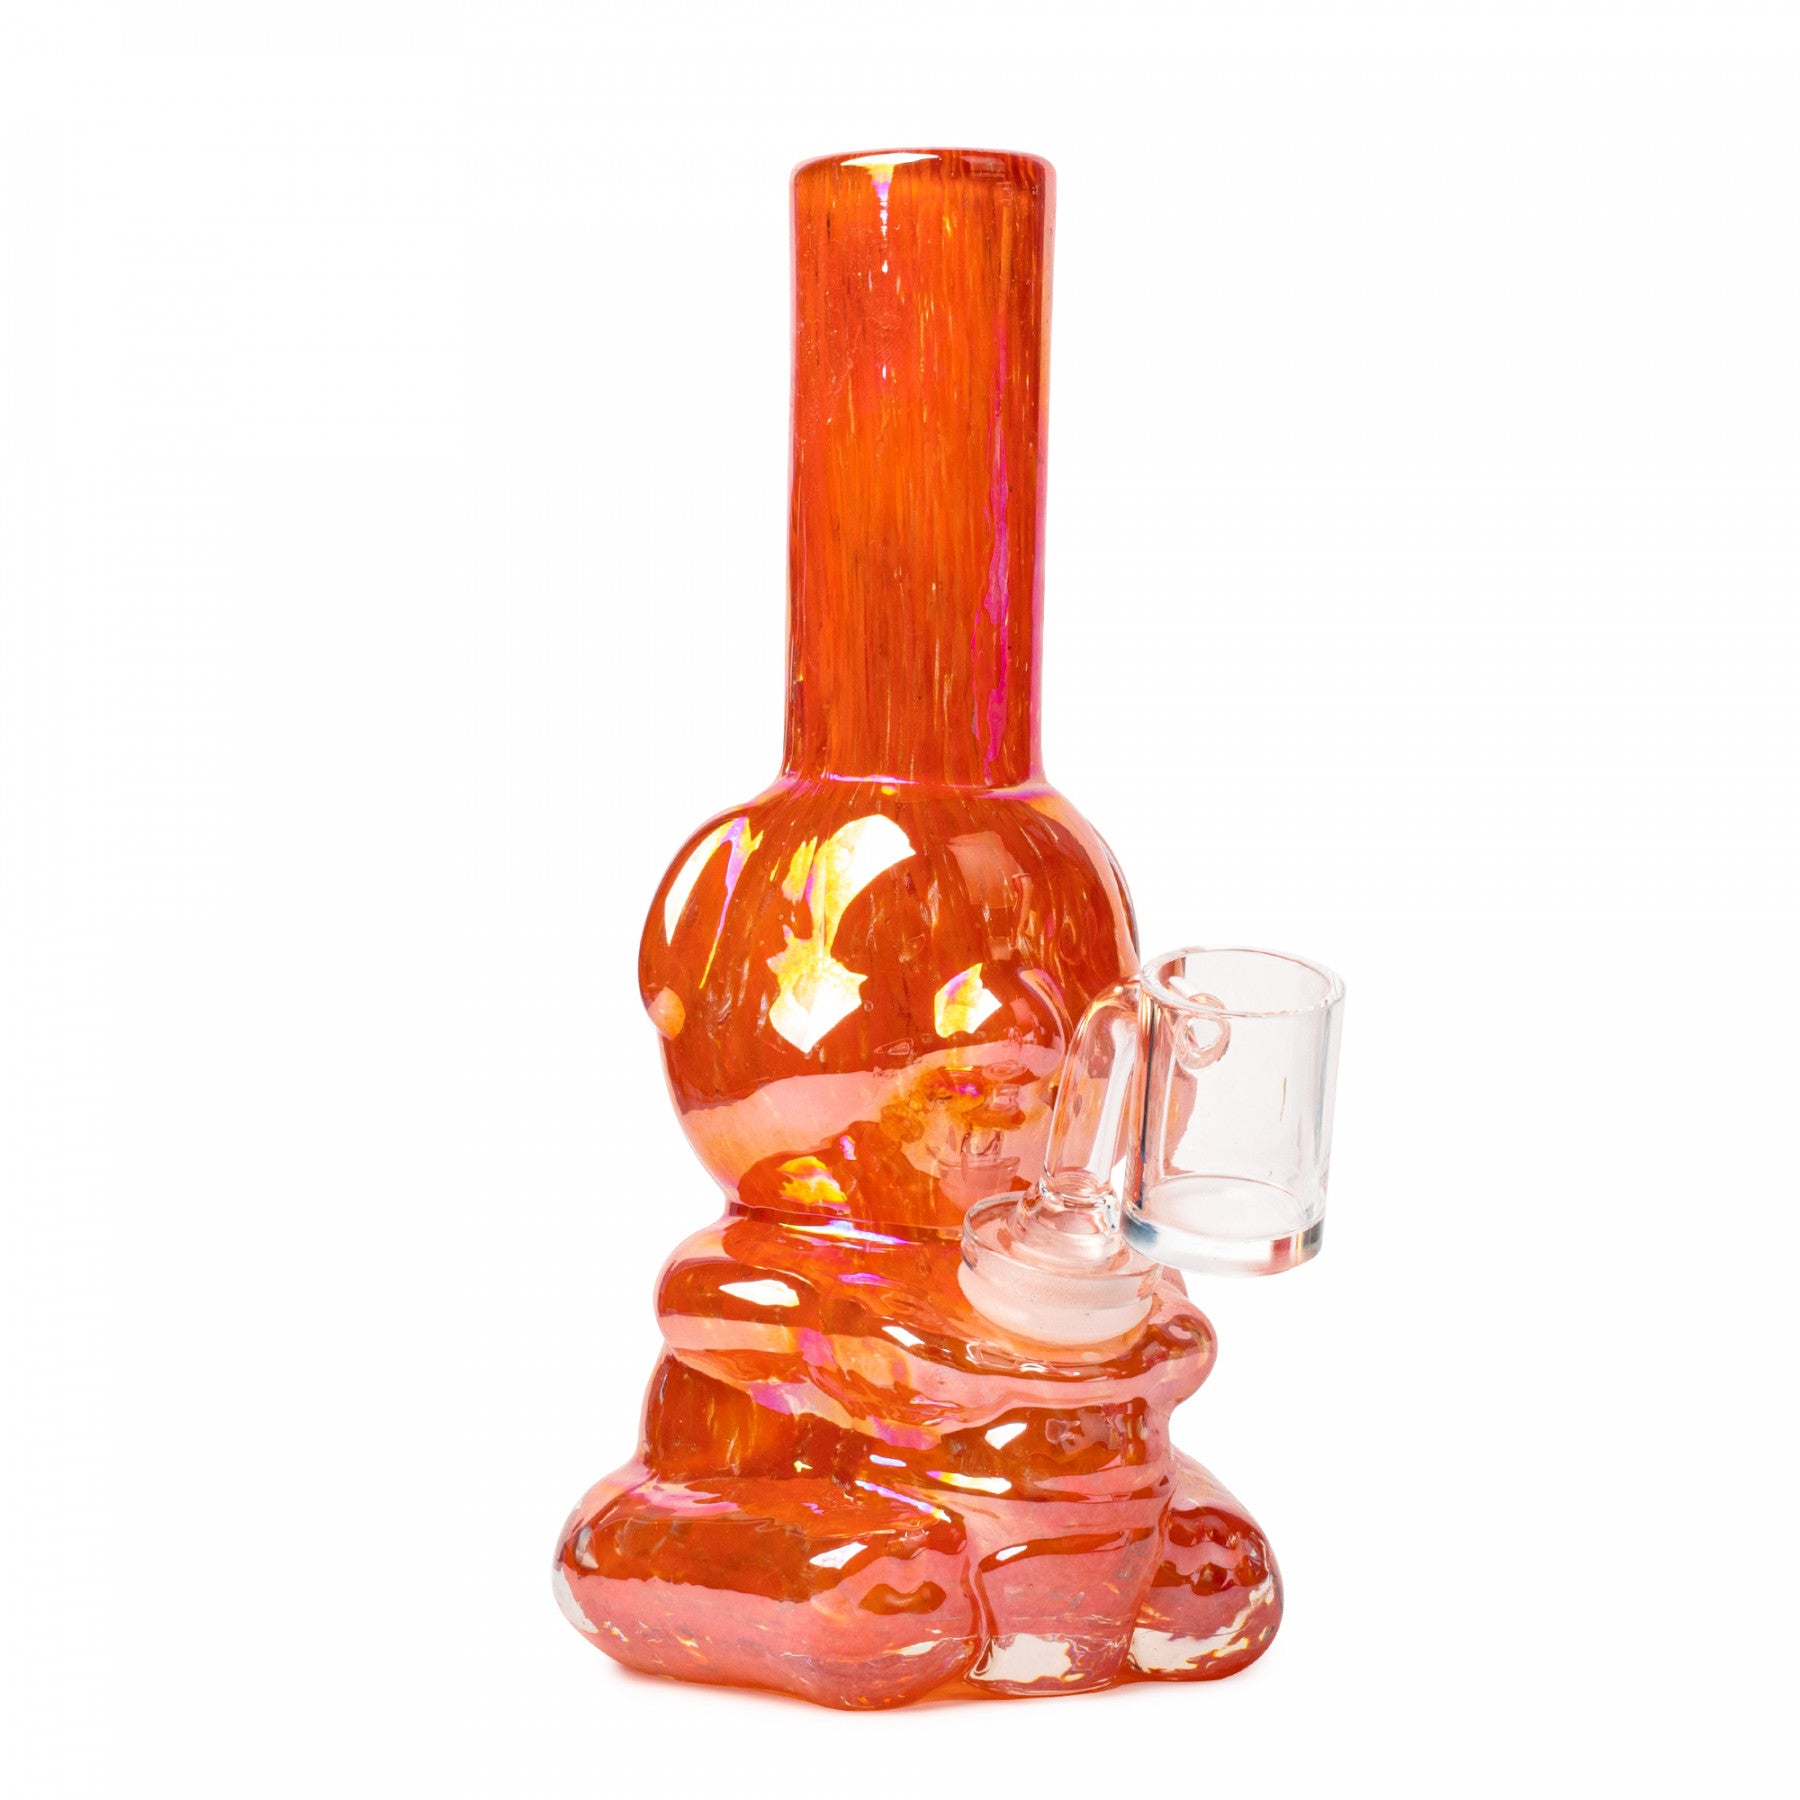 metallic orange bear shaped glass bong in toronto